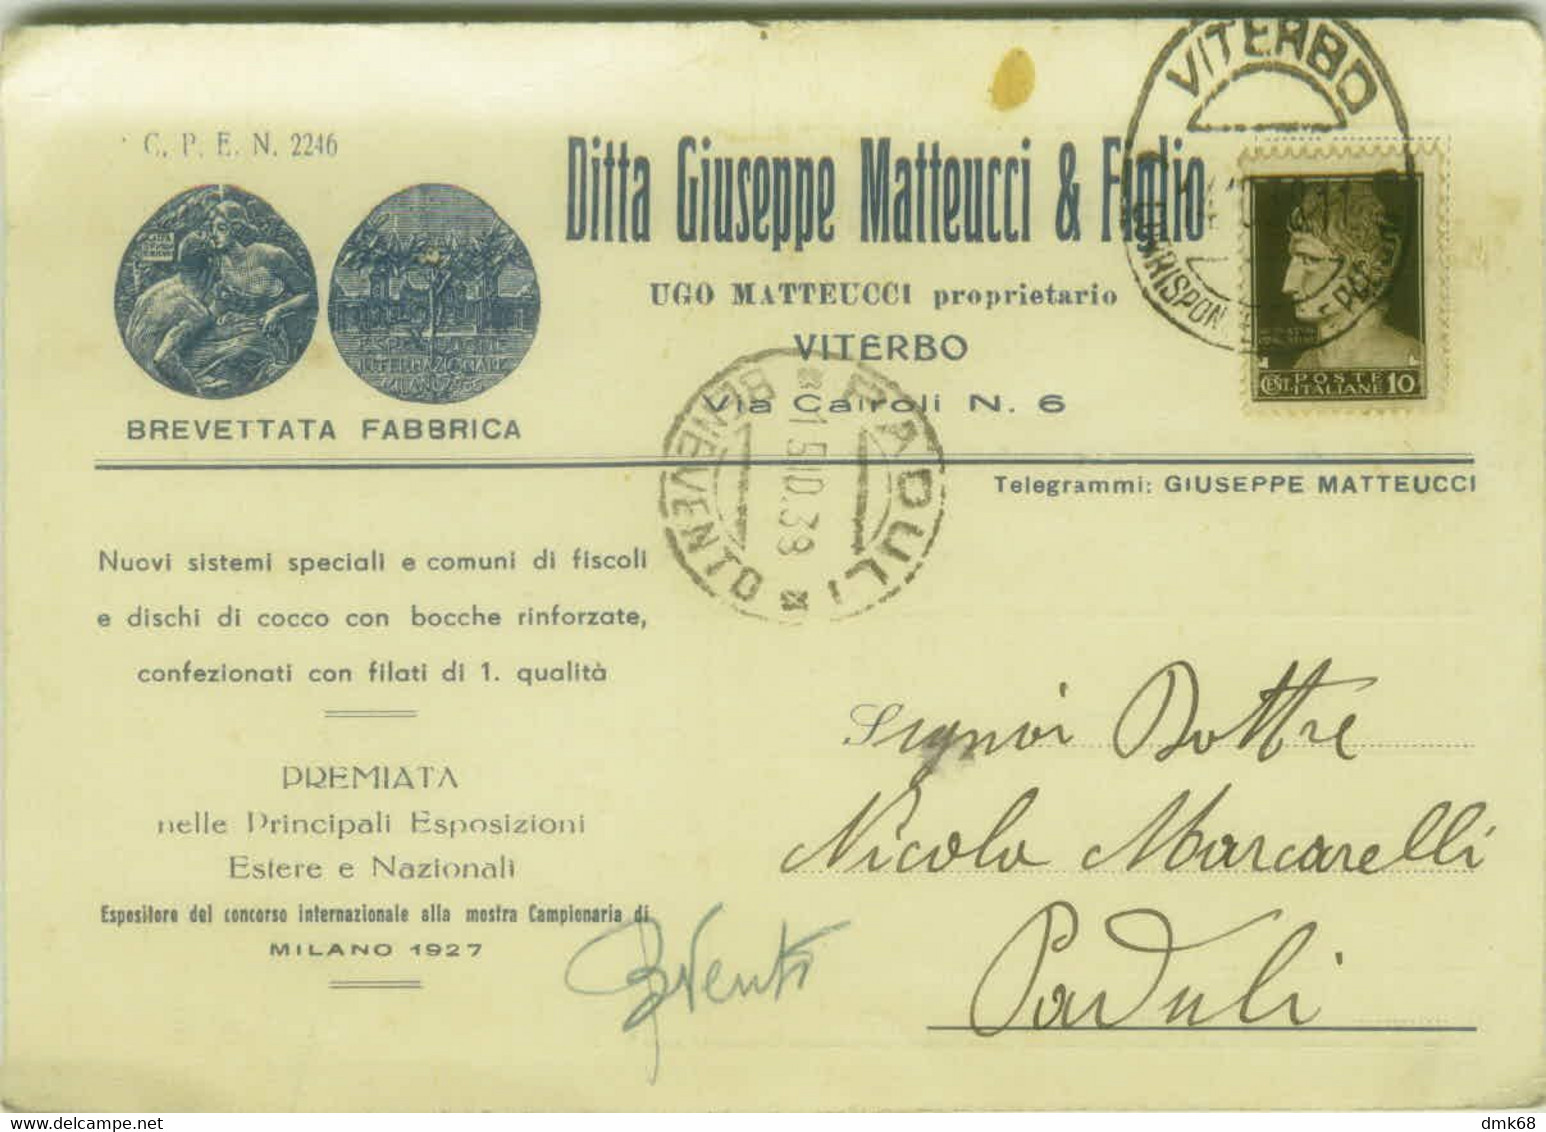 VITERBO - DITTA GIUSEPPE MATTEUCCI & FIGLIO - CARTOLINA PUBBLICITARIA - 1930s (6810) - Viterbo